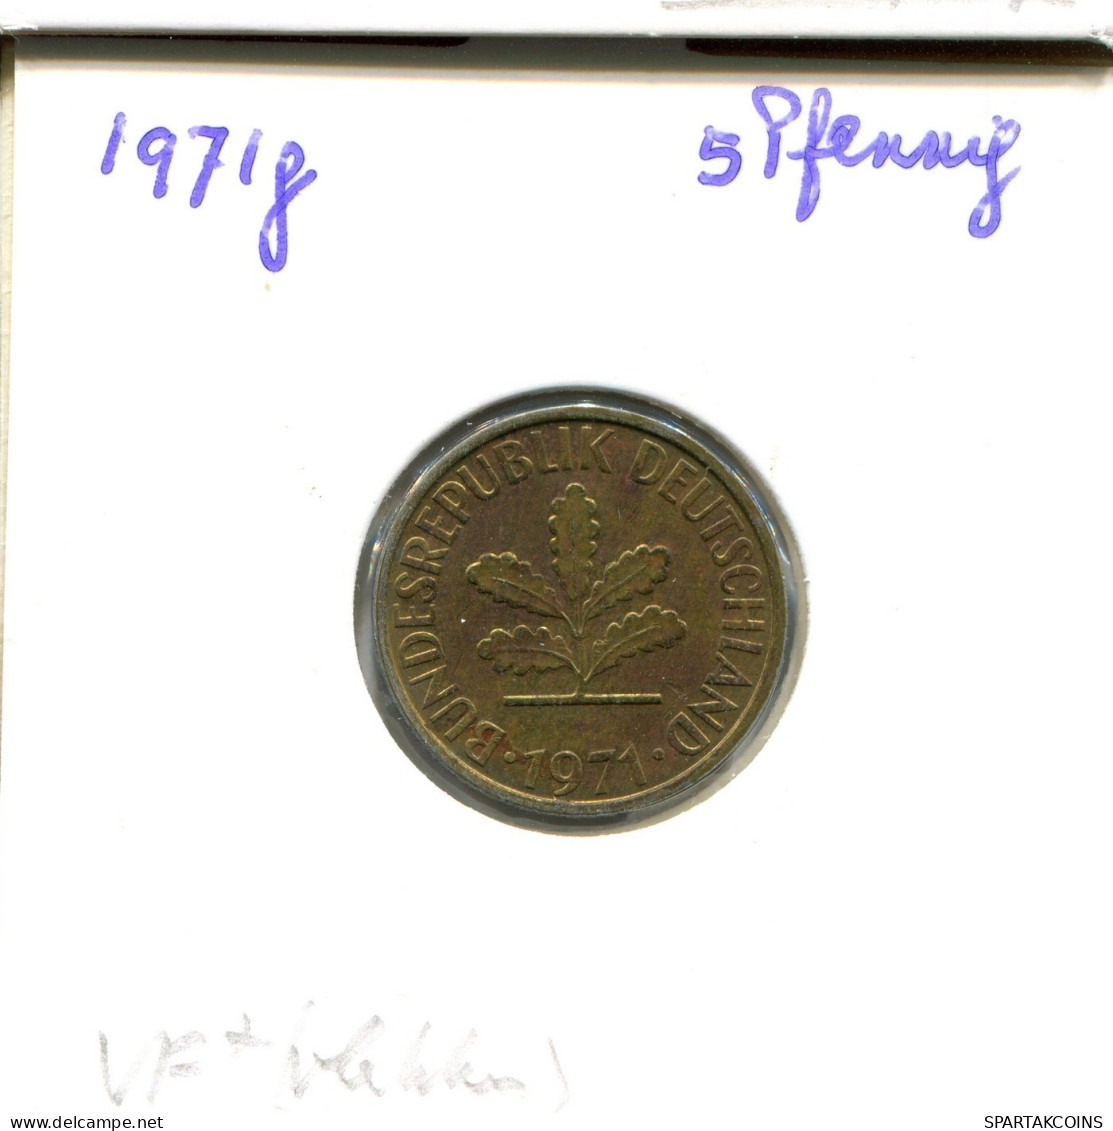 5 PFENNIG 1971 G WEST & UNIFIED GERMANY Coin #DA978.U.A - 5 Pfennig